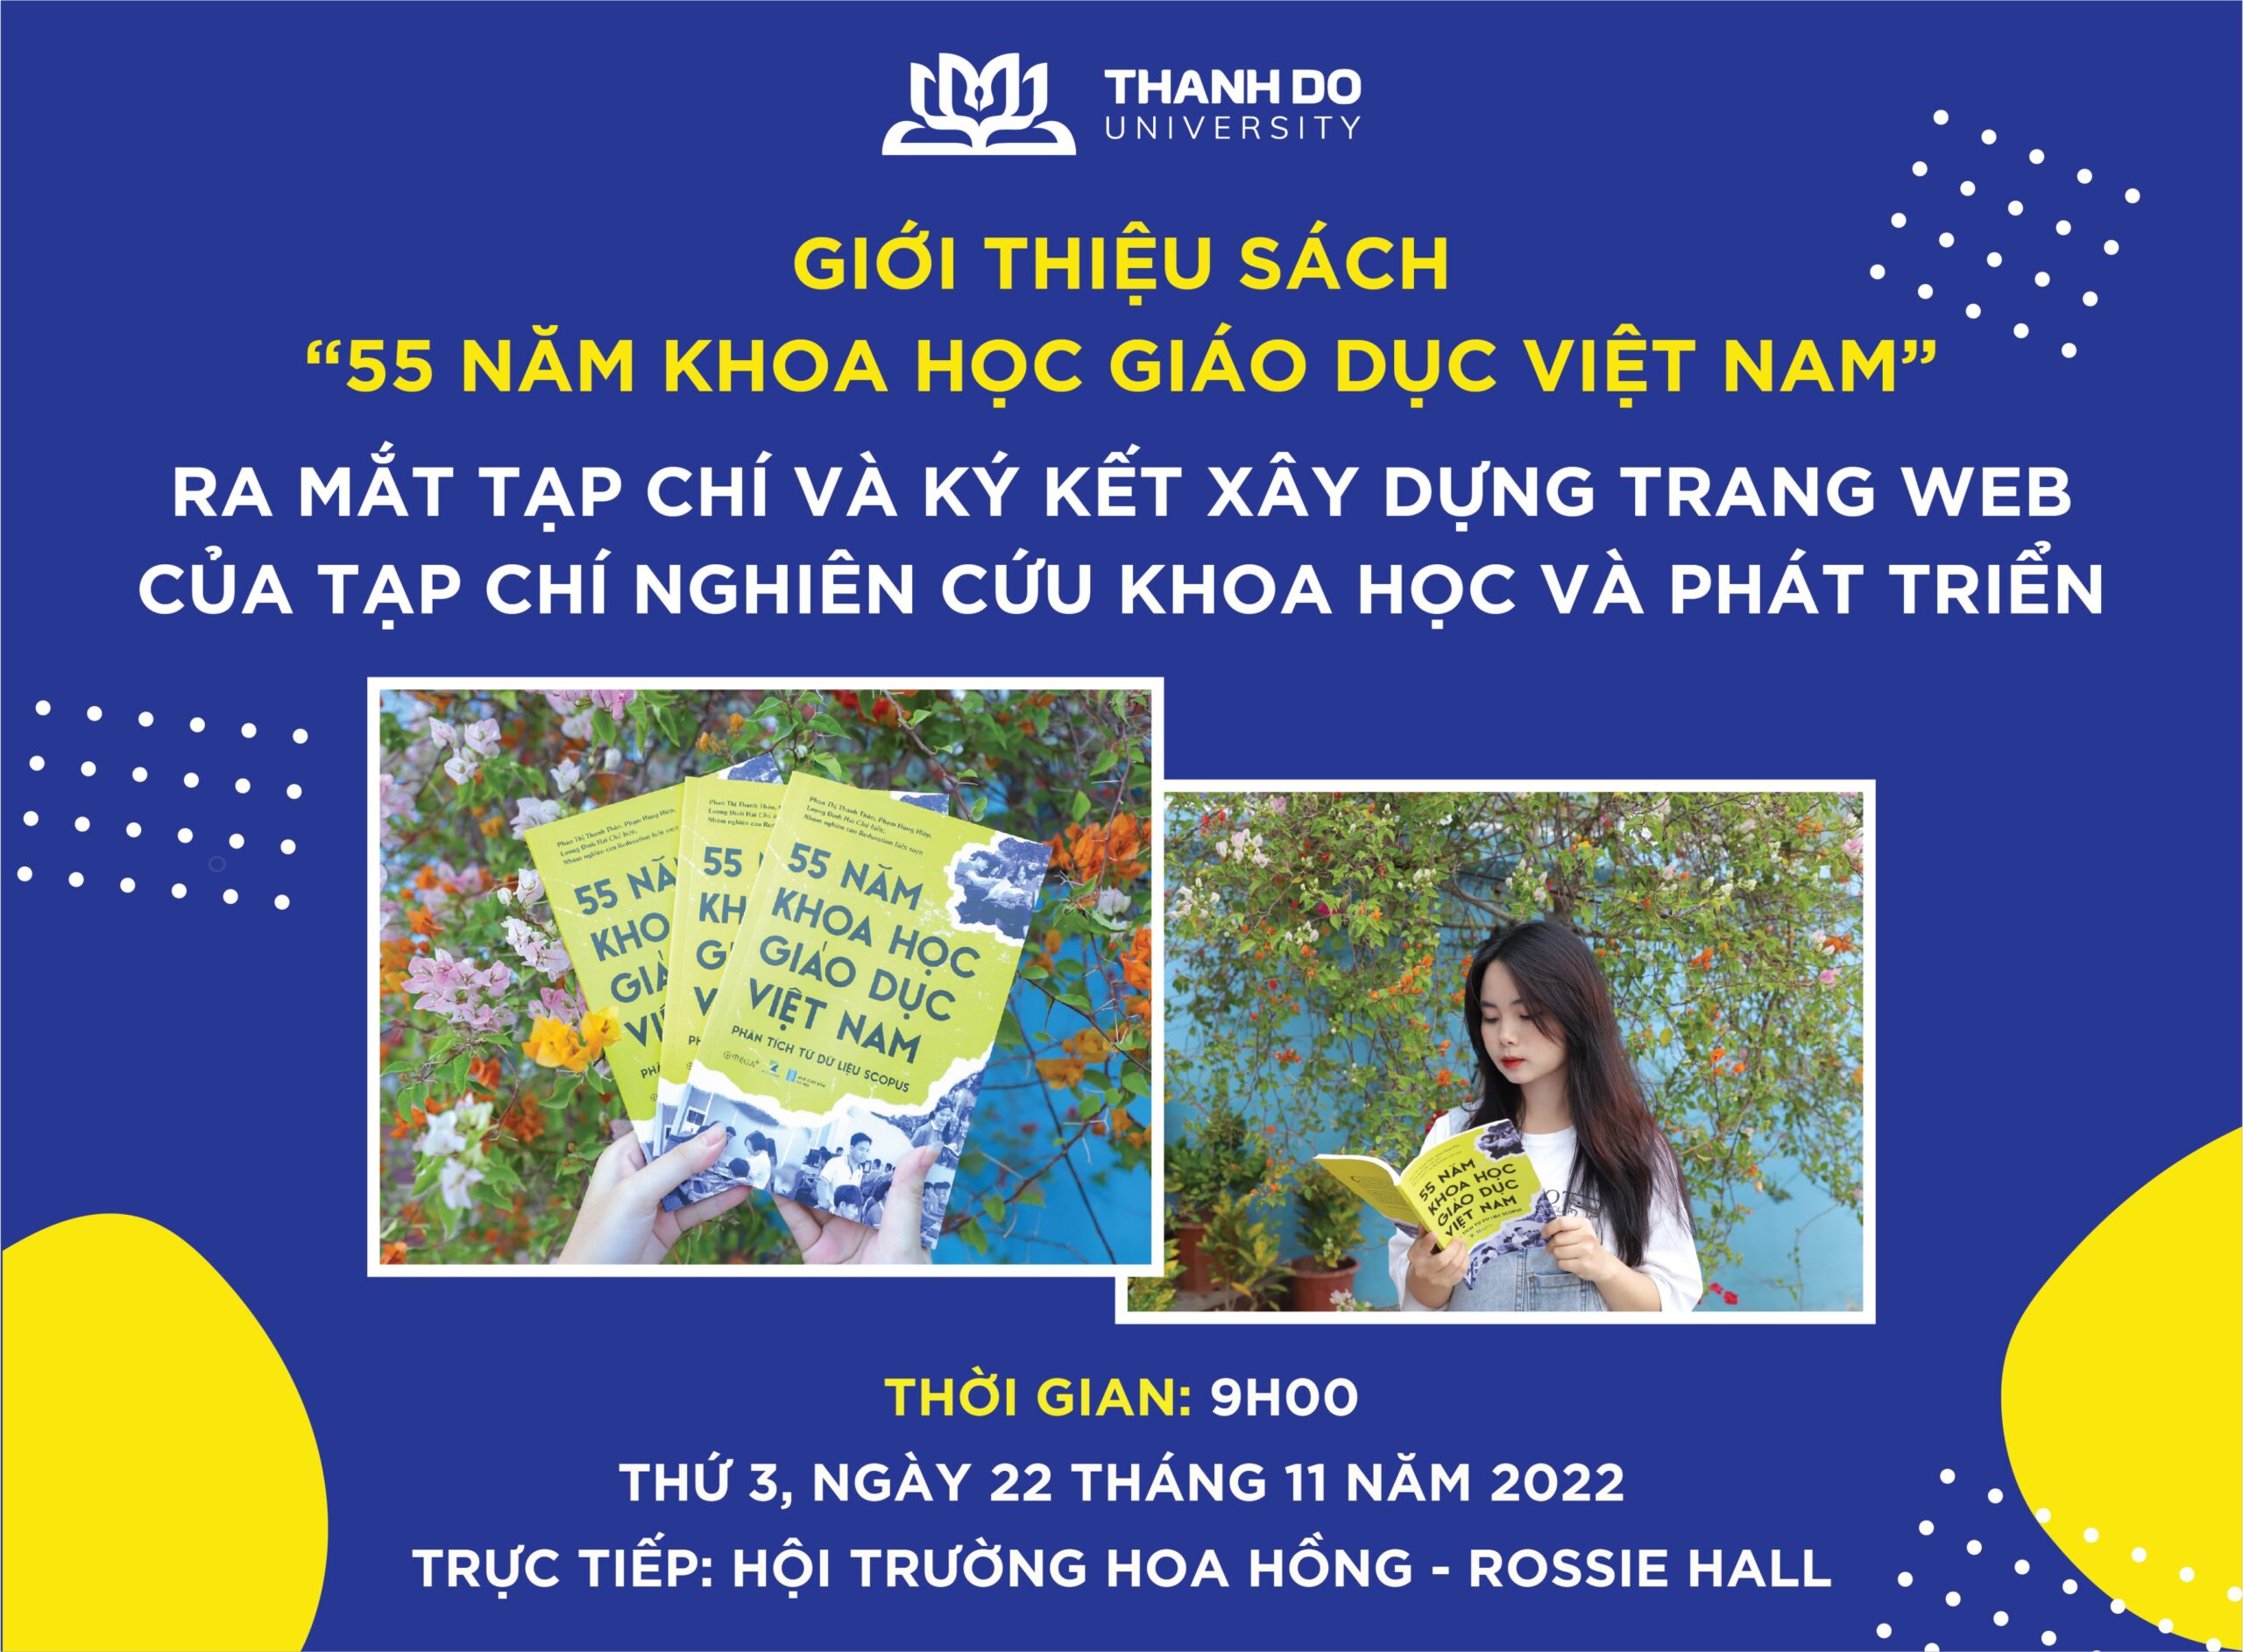 Chương trình Giới thiệu sách”55 năm Khoa học Giáo dục Việt Nam”, ra mắt Tạp chí và ký kết xây dựng trang Web của Tạp chí Nghiên cứu khoa học và phát triển.